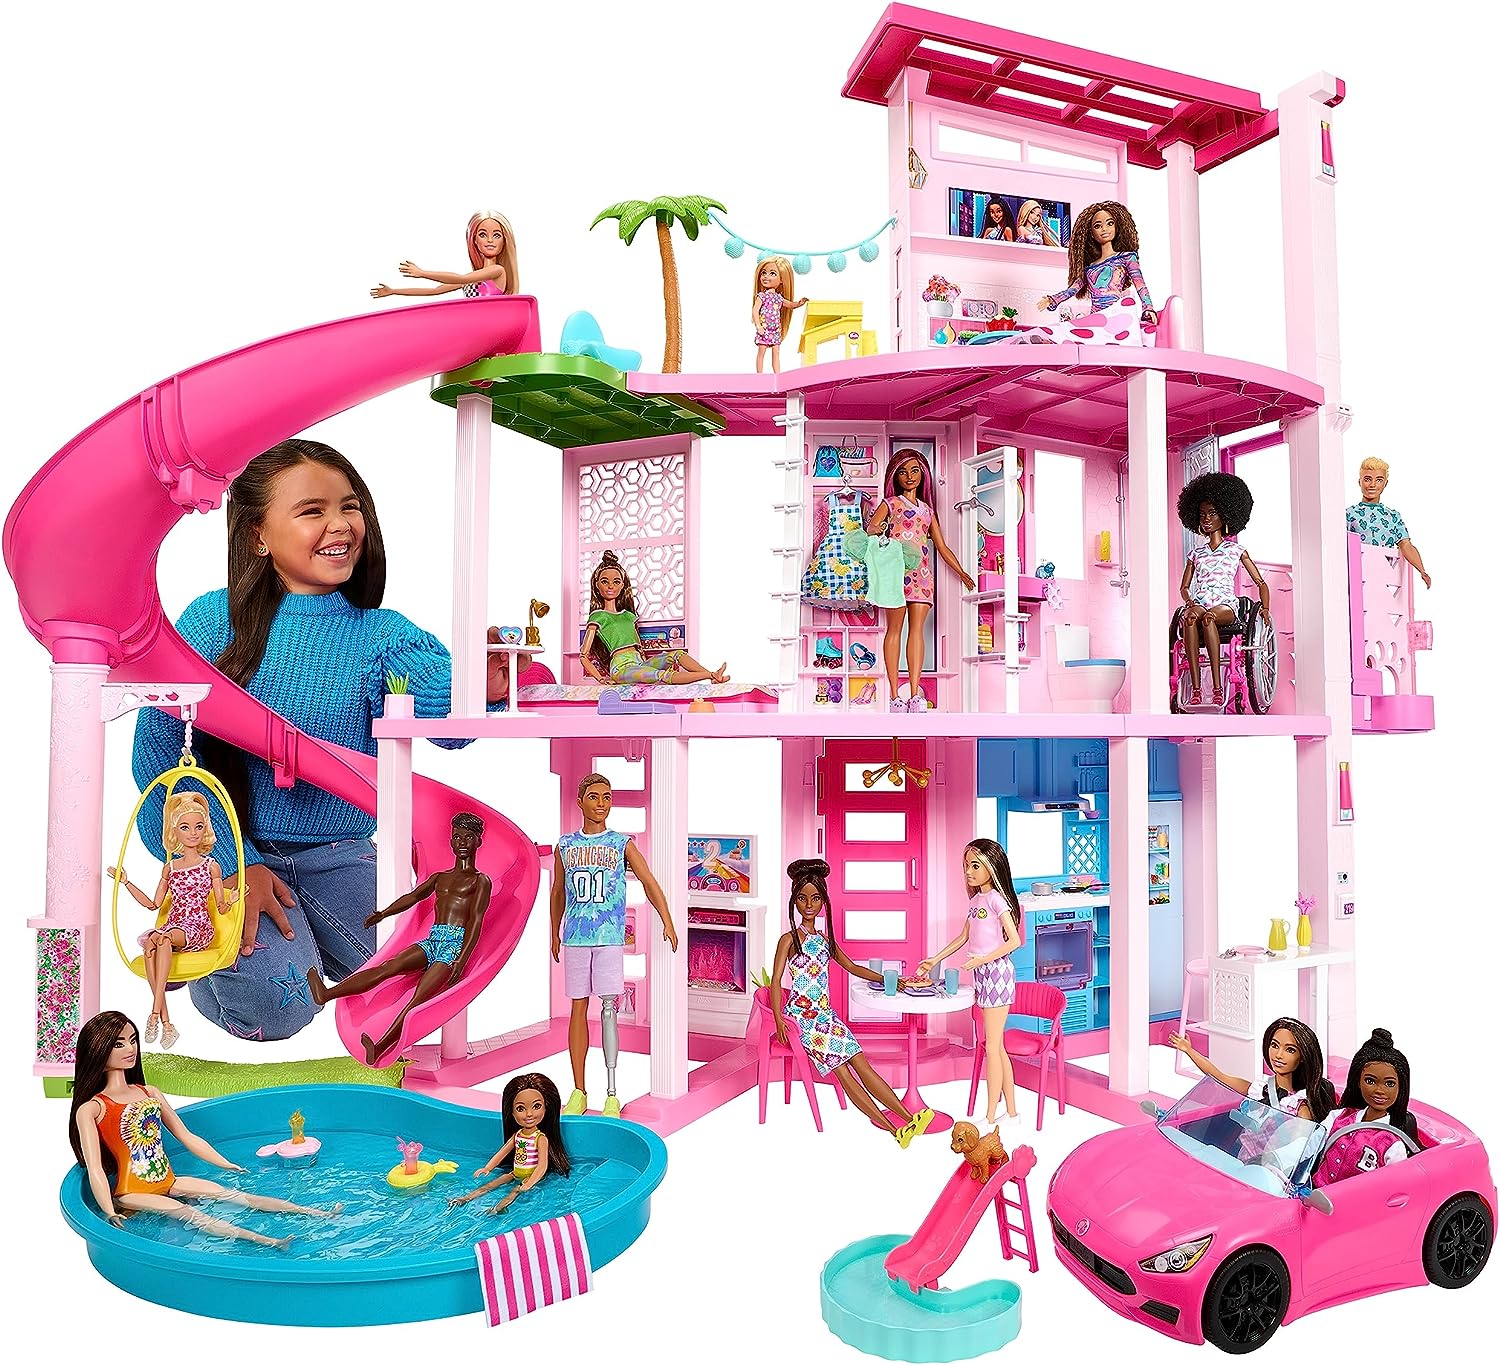 Maison de Barbie entièrement meublée - Com'UnCoeur Dakar